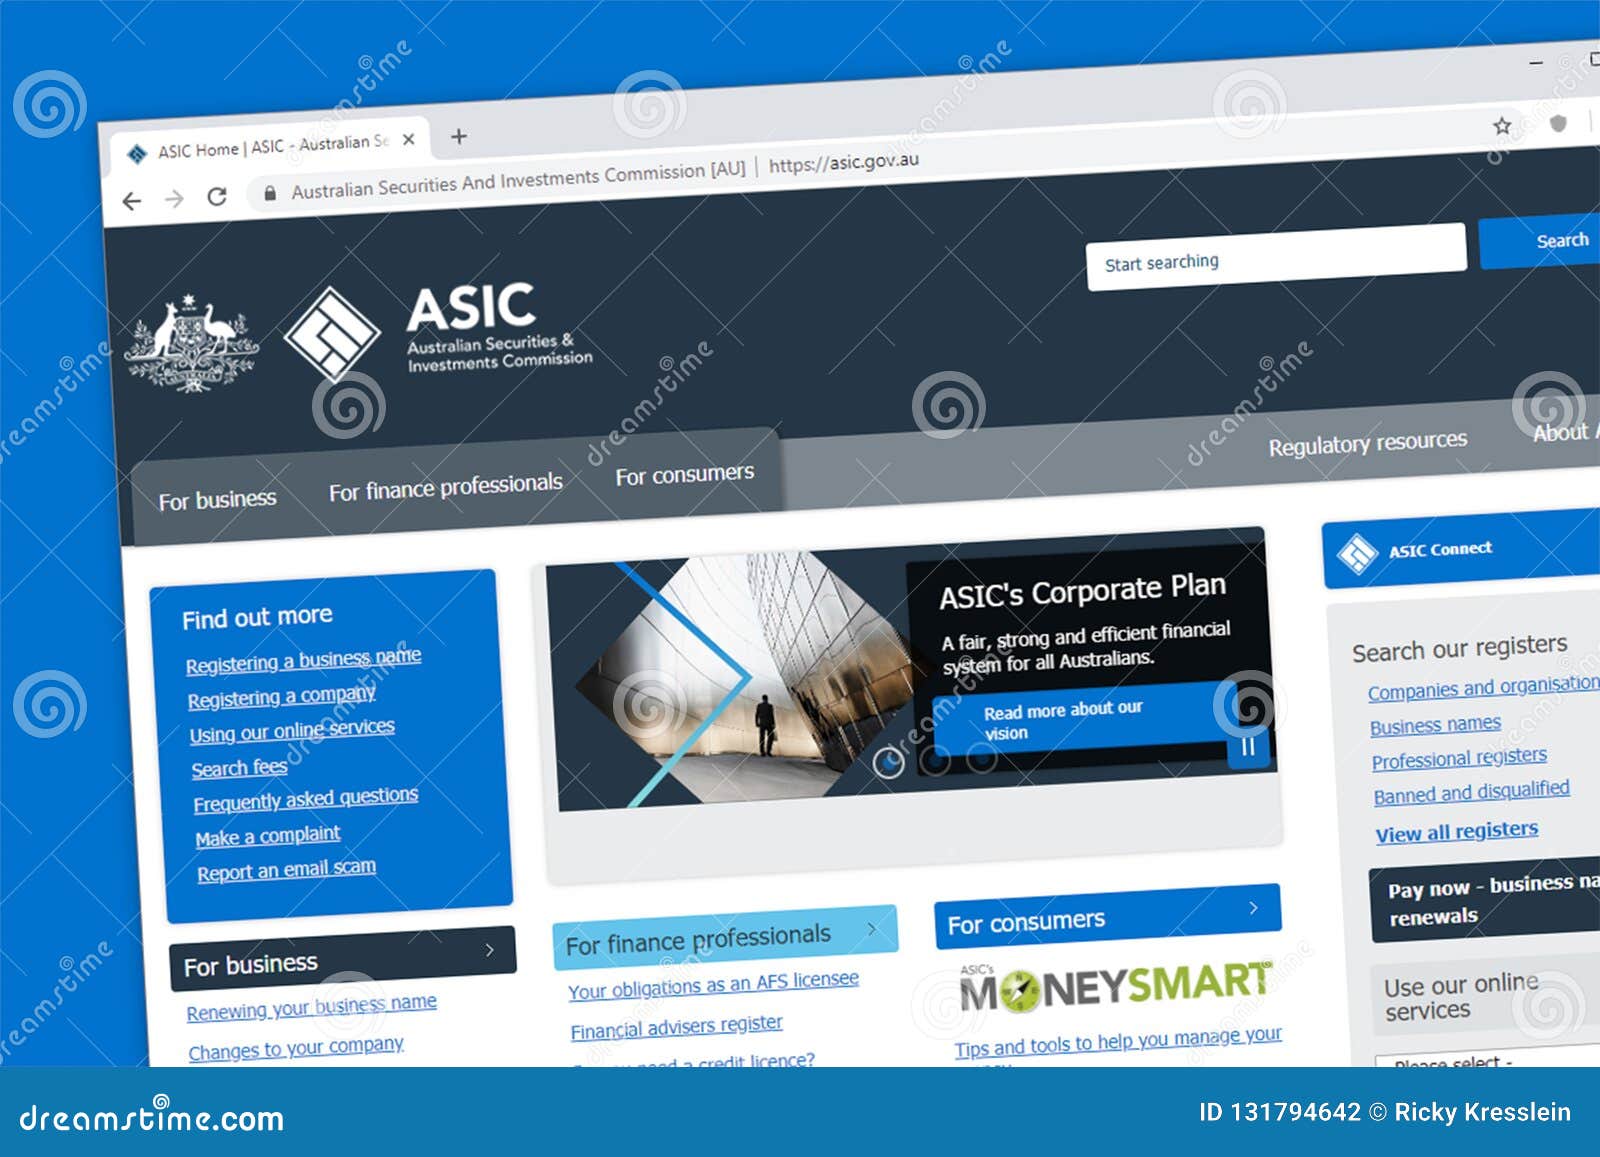 asic website